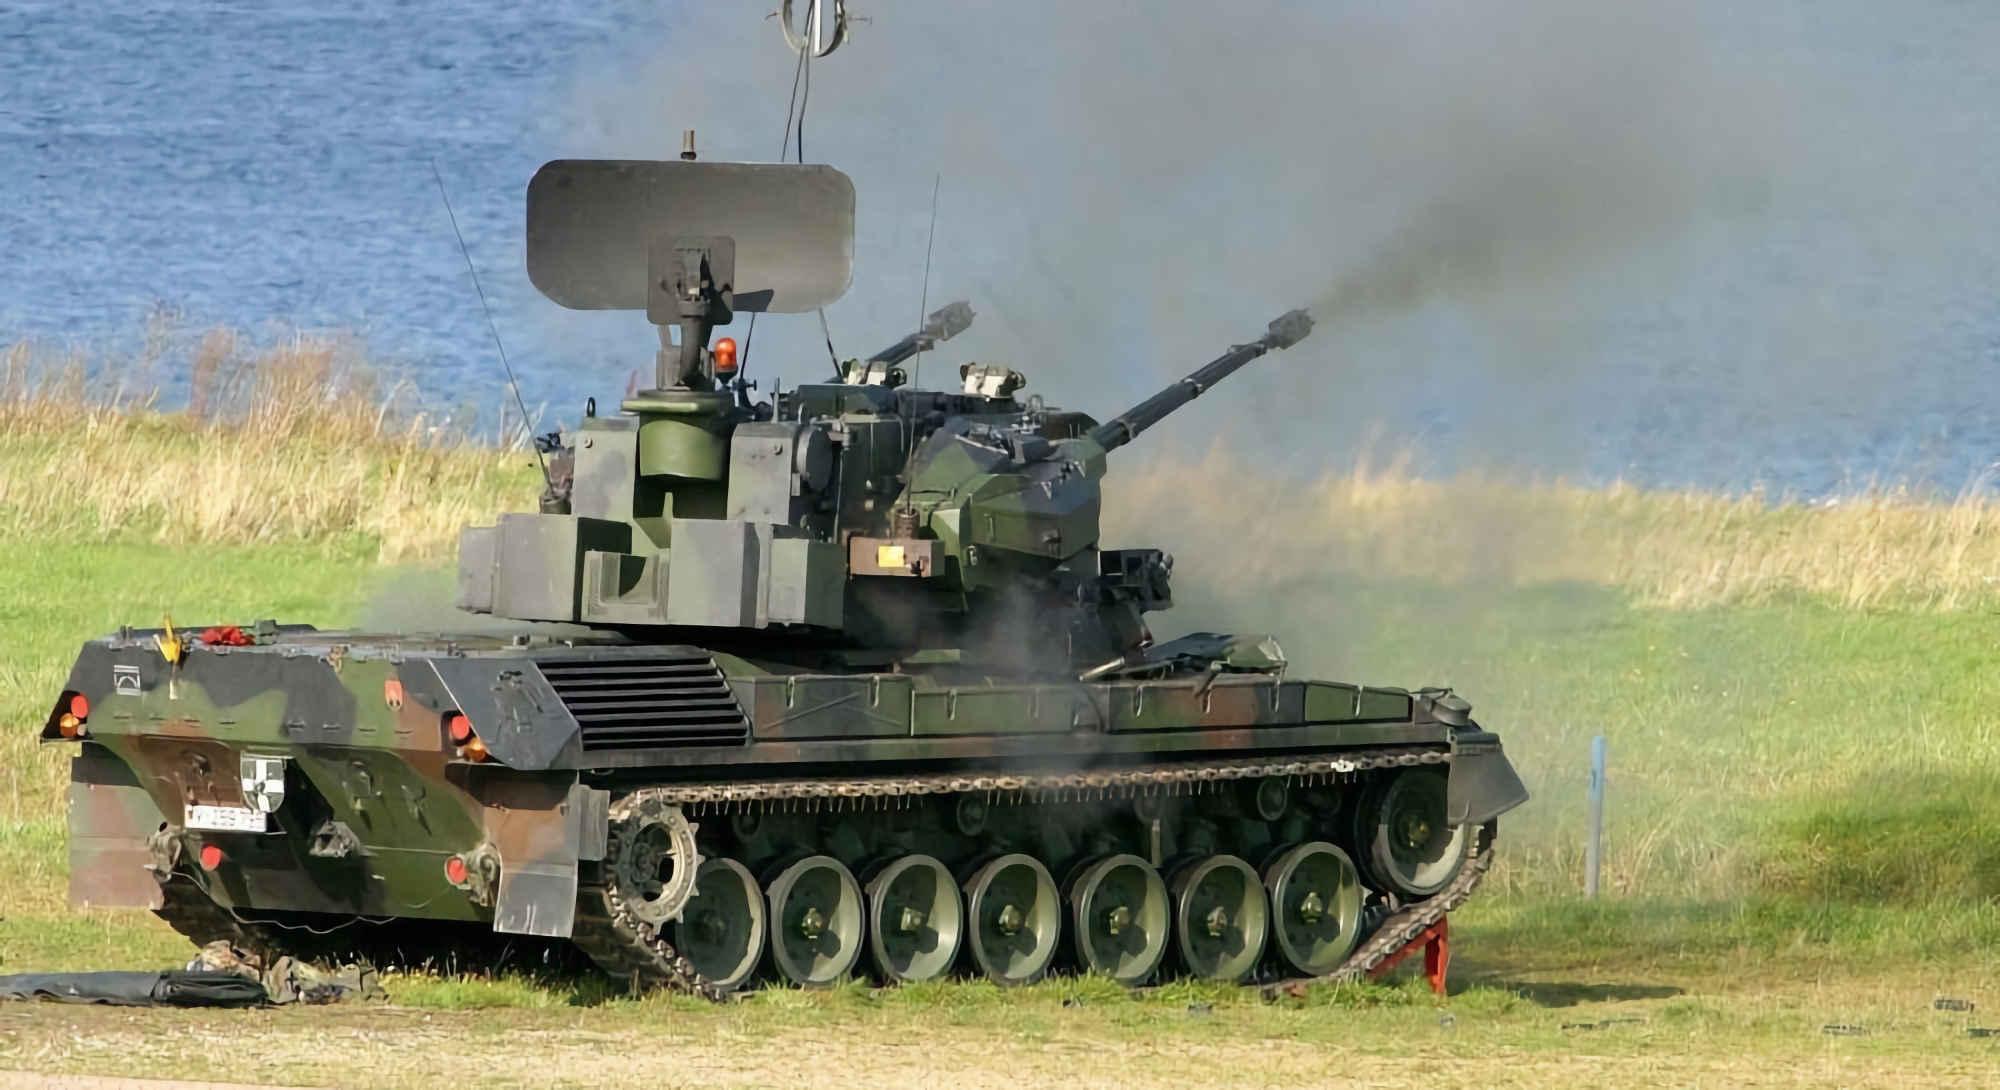 Las Fuerzas Armadas de Ucrania ya utilizan sistemas de defensa aérea autopropulsados Gepard contra vehículos aéreos no tripulados, aviones y helicópteros del enemigo